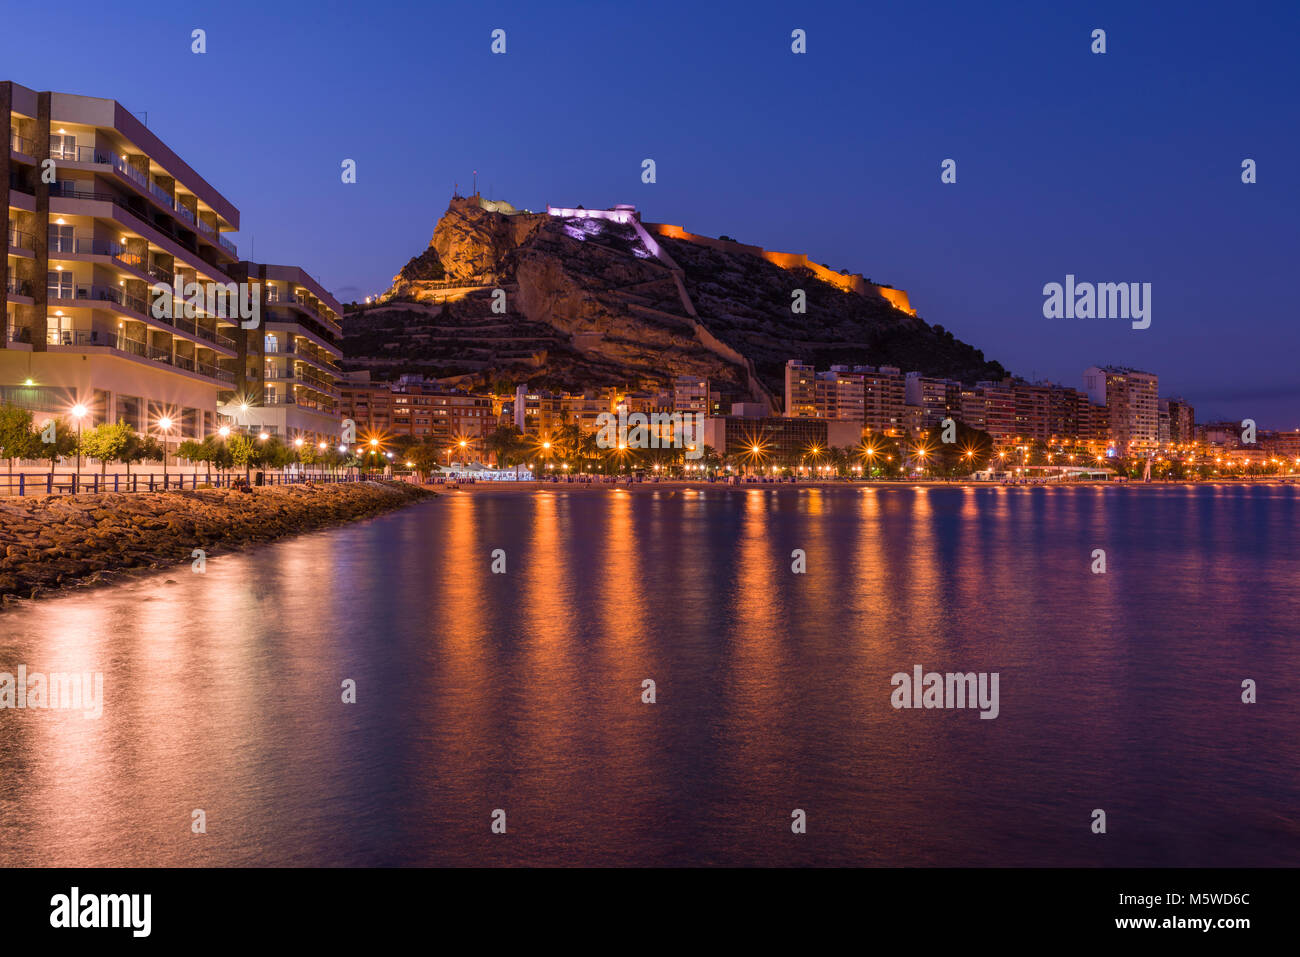 Die Burg Santa Barbara in der Stadt Alicante bei Nacht Spanien. Stockfoto